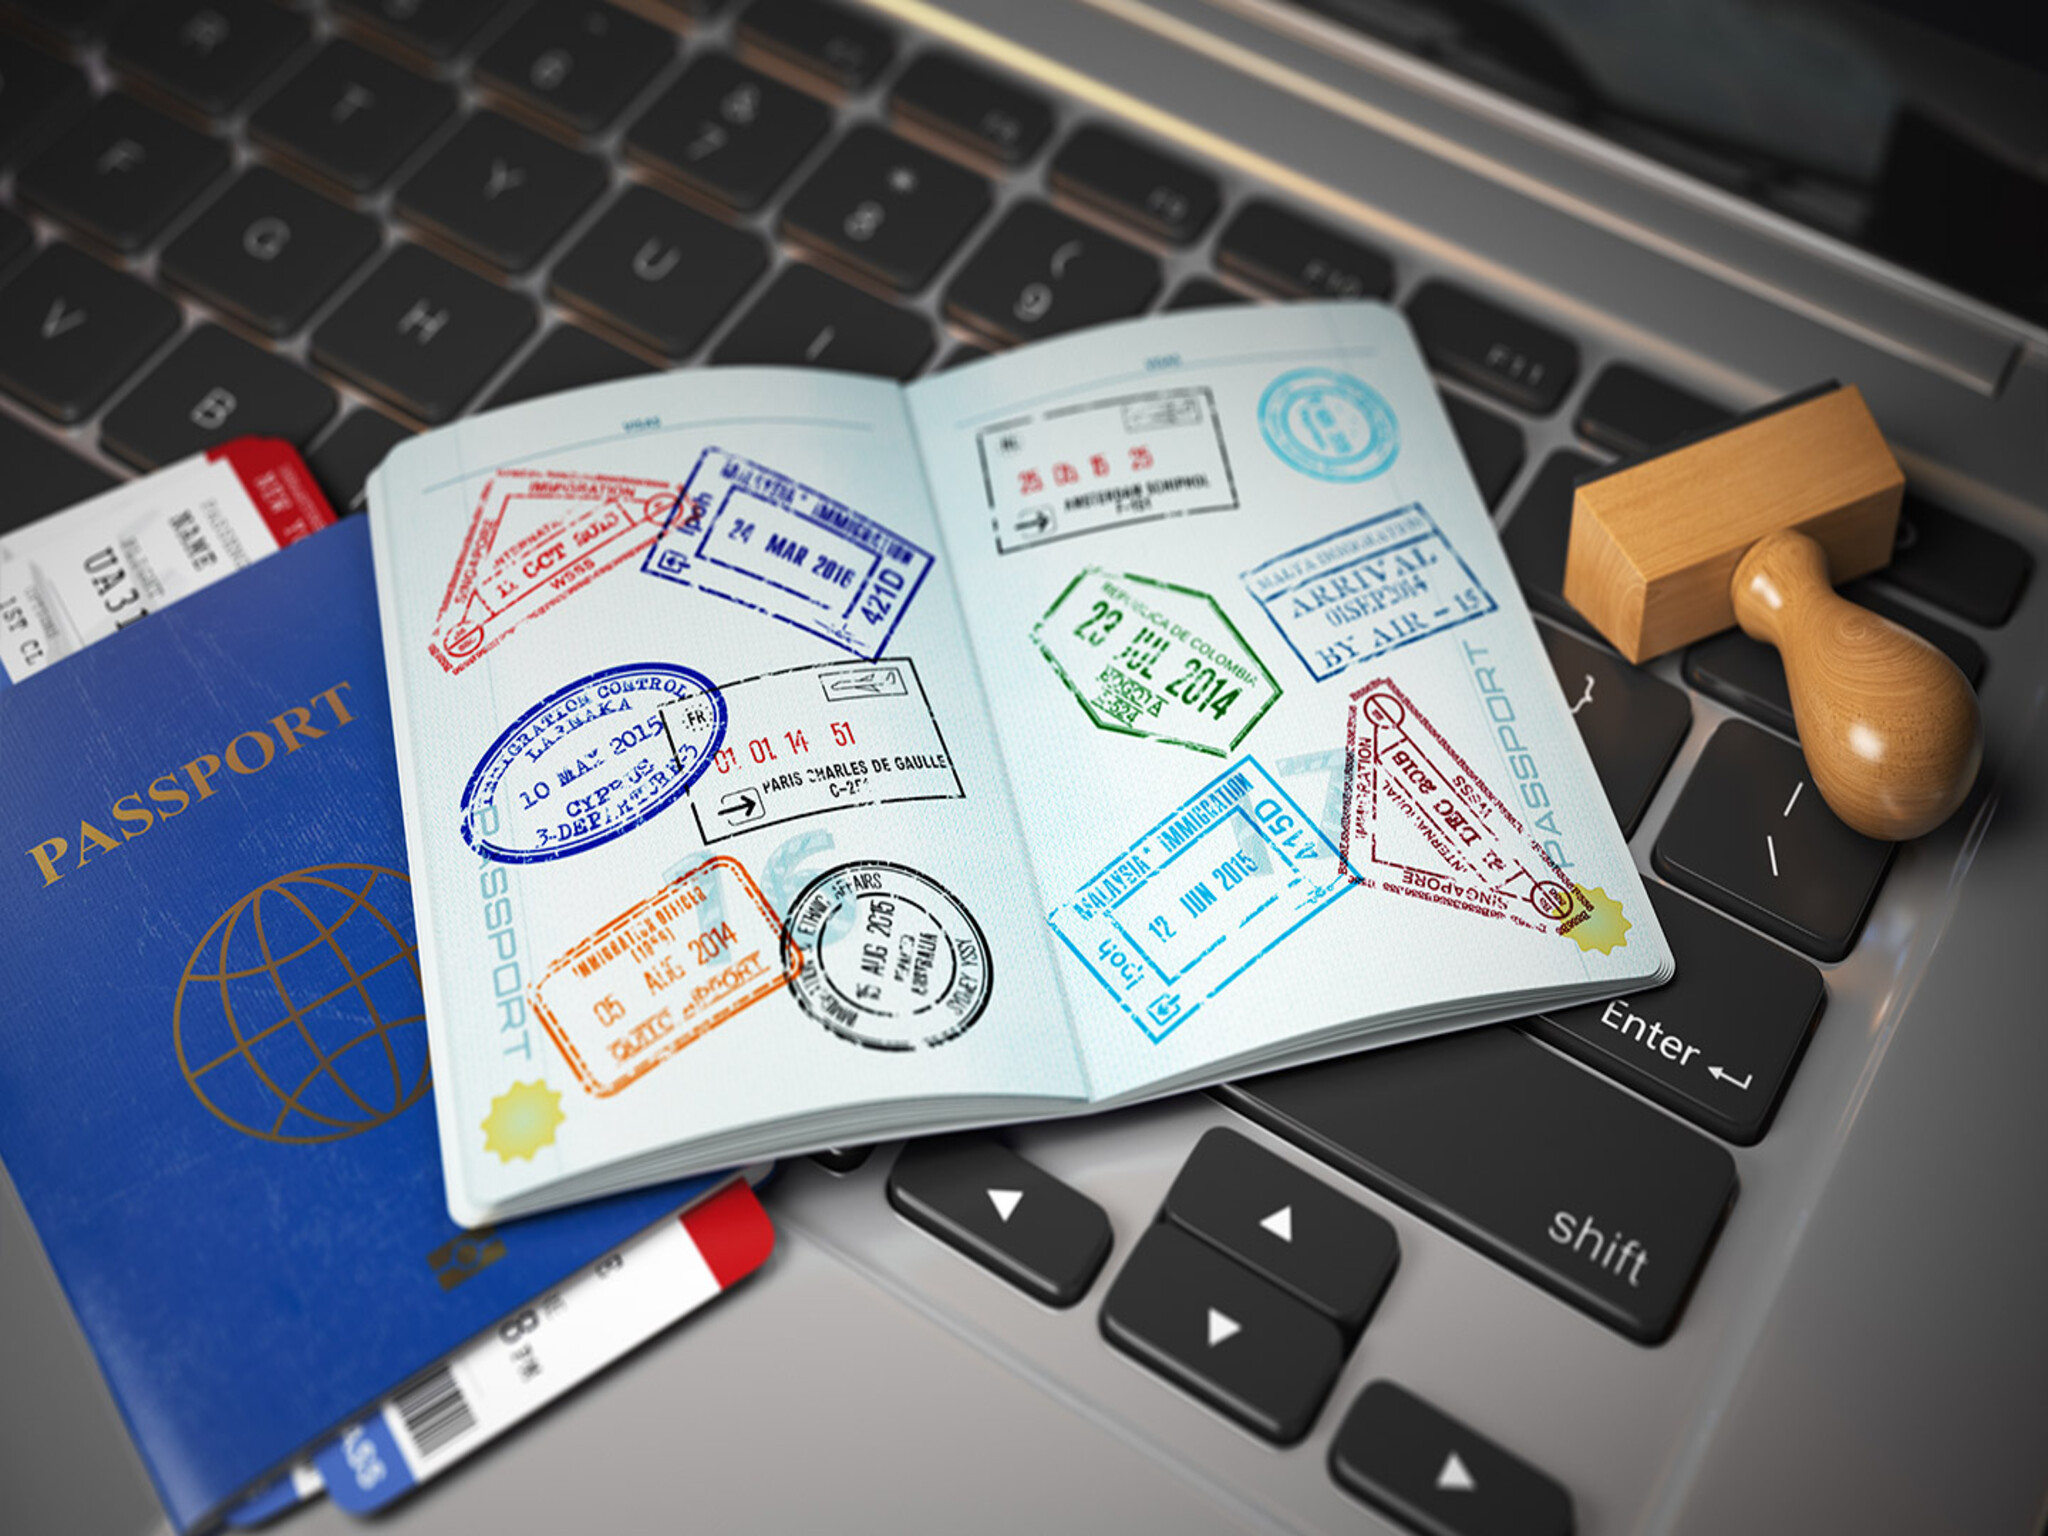 الحكومة الإماراتية توضح إجراءات إلغاء تأشيرة الإقامة فى حال مغادرة البلاد